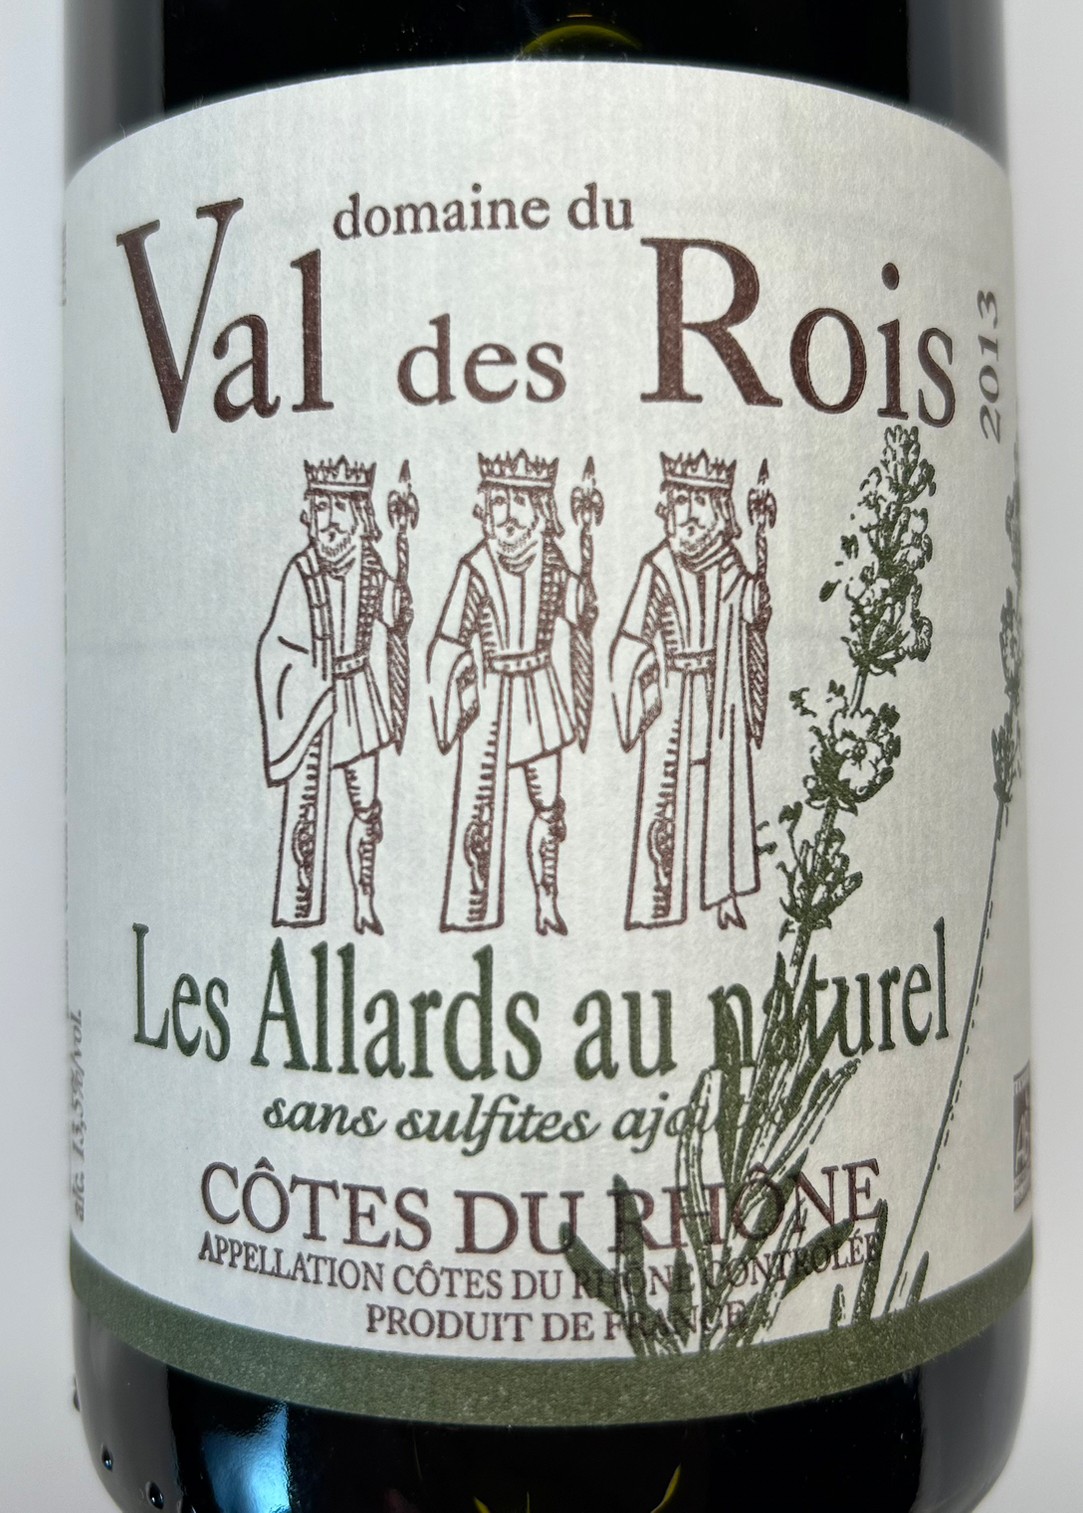 Côtes  du  Rhône  rouge  ≪Les  Allards  au  naturel  ≫ コート デュ ローヌ ルージュ　レザール オー ナチュレル